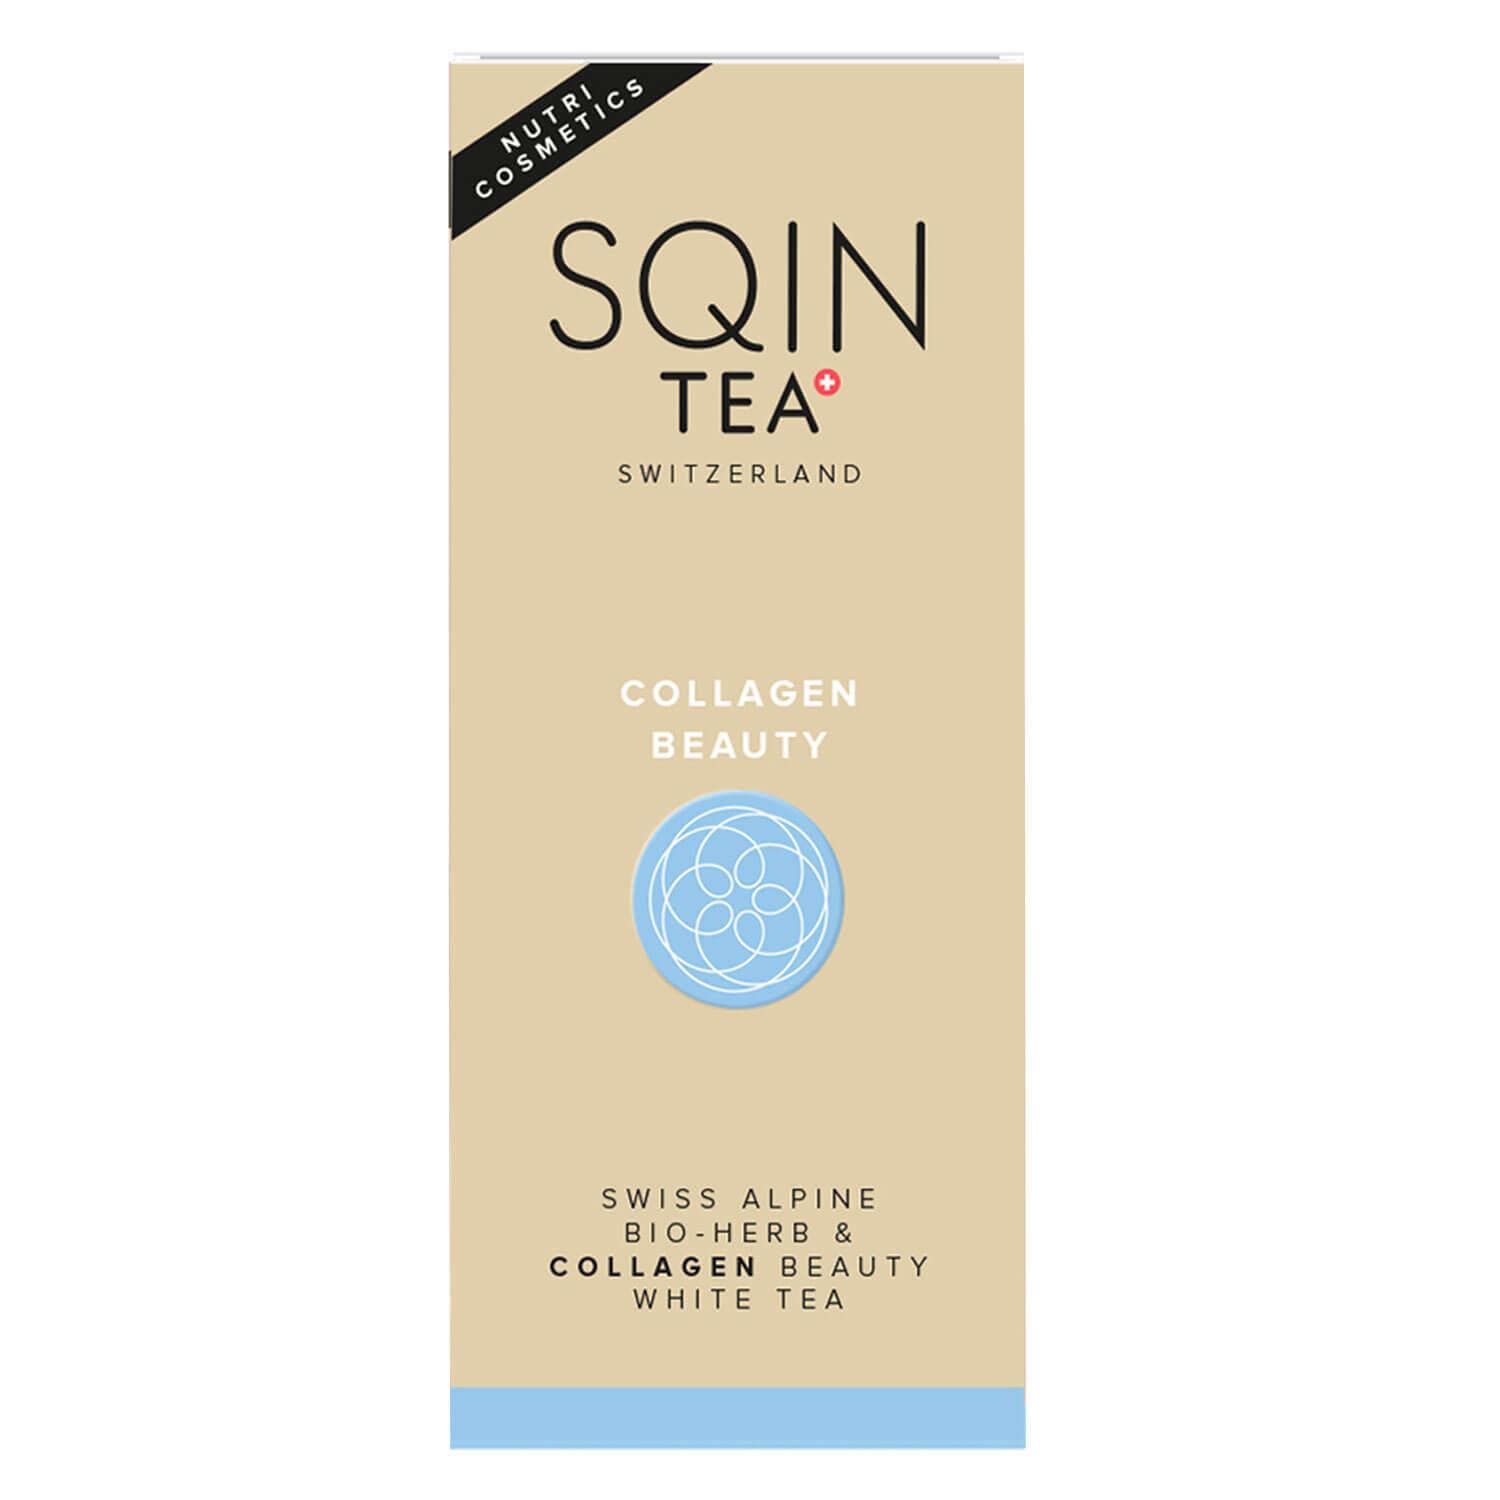 SQINTEA - Collagen Beauty